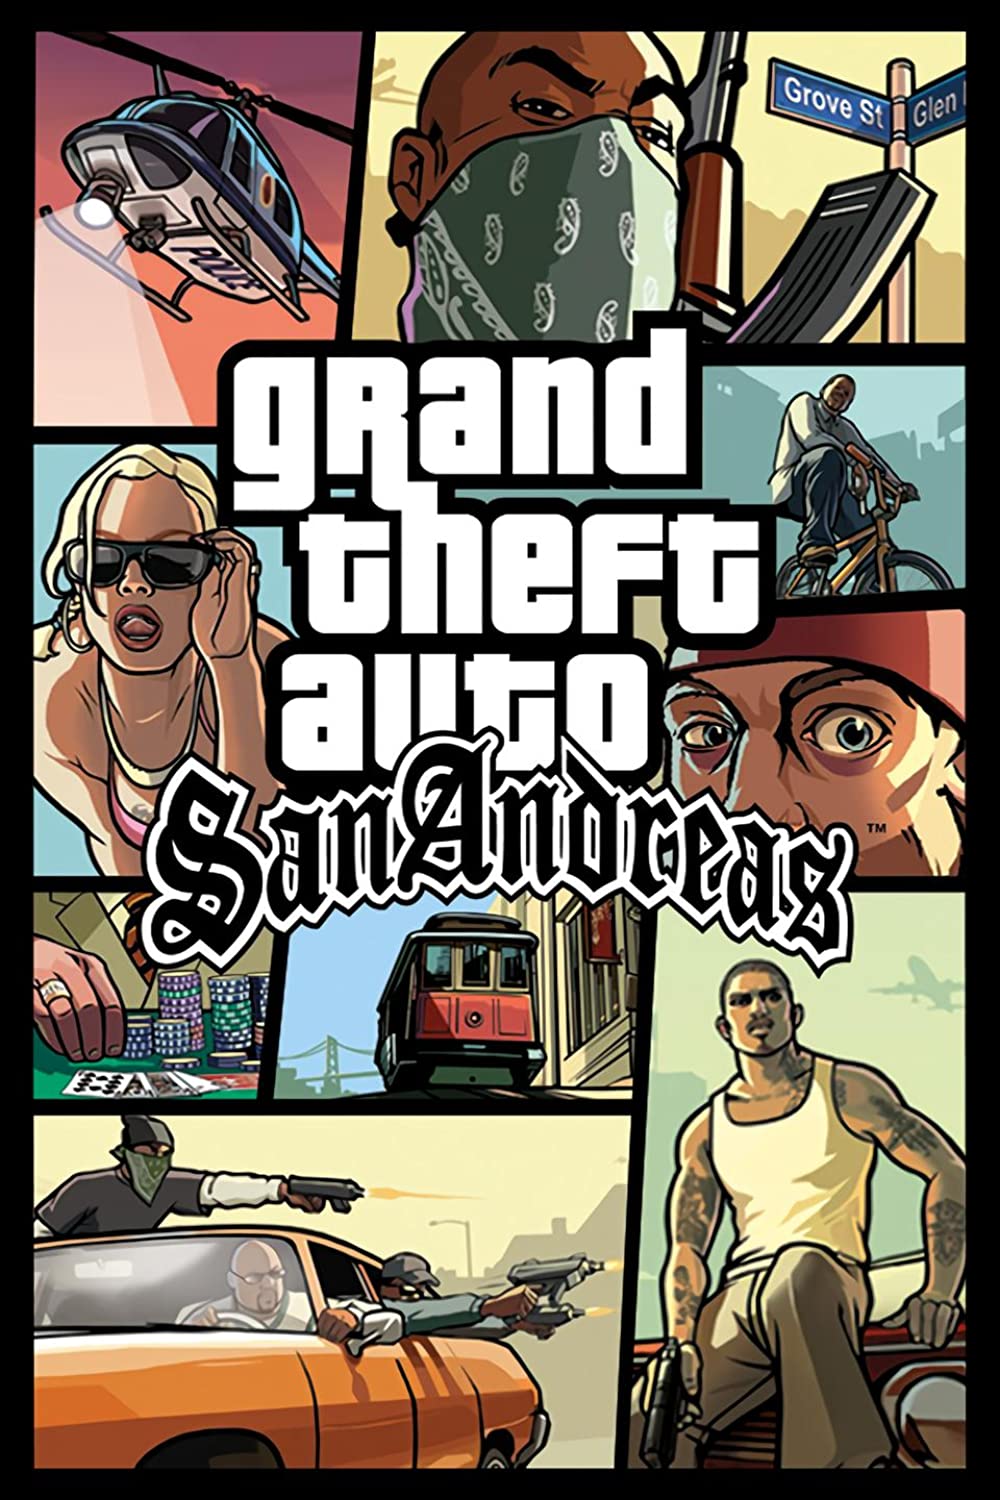 لعبة Grand Theft Auto San Andreas